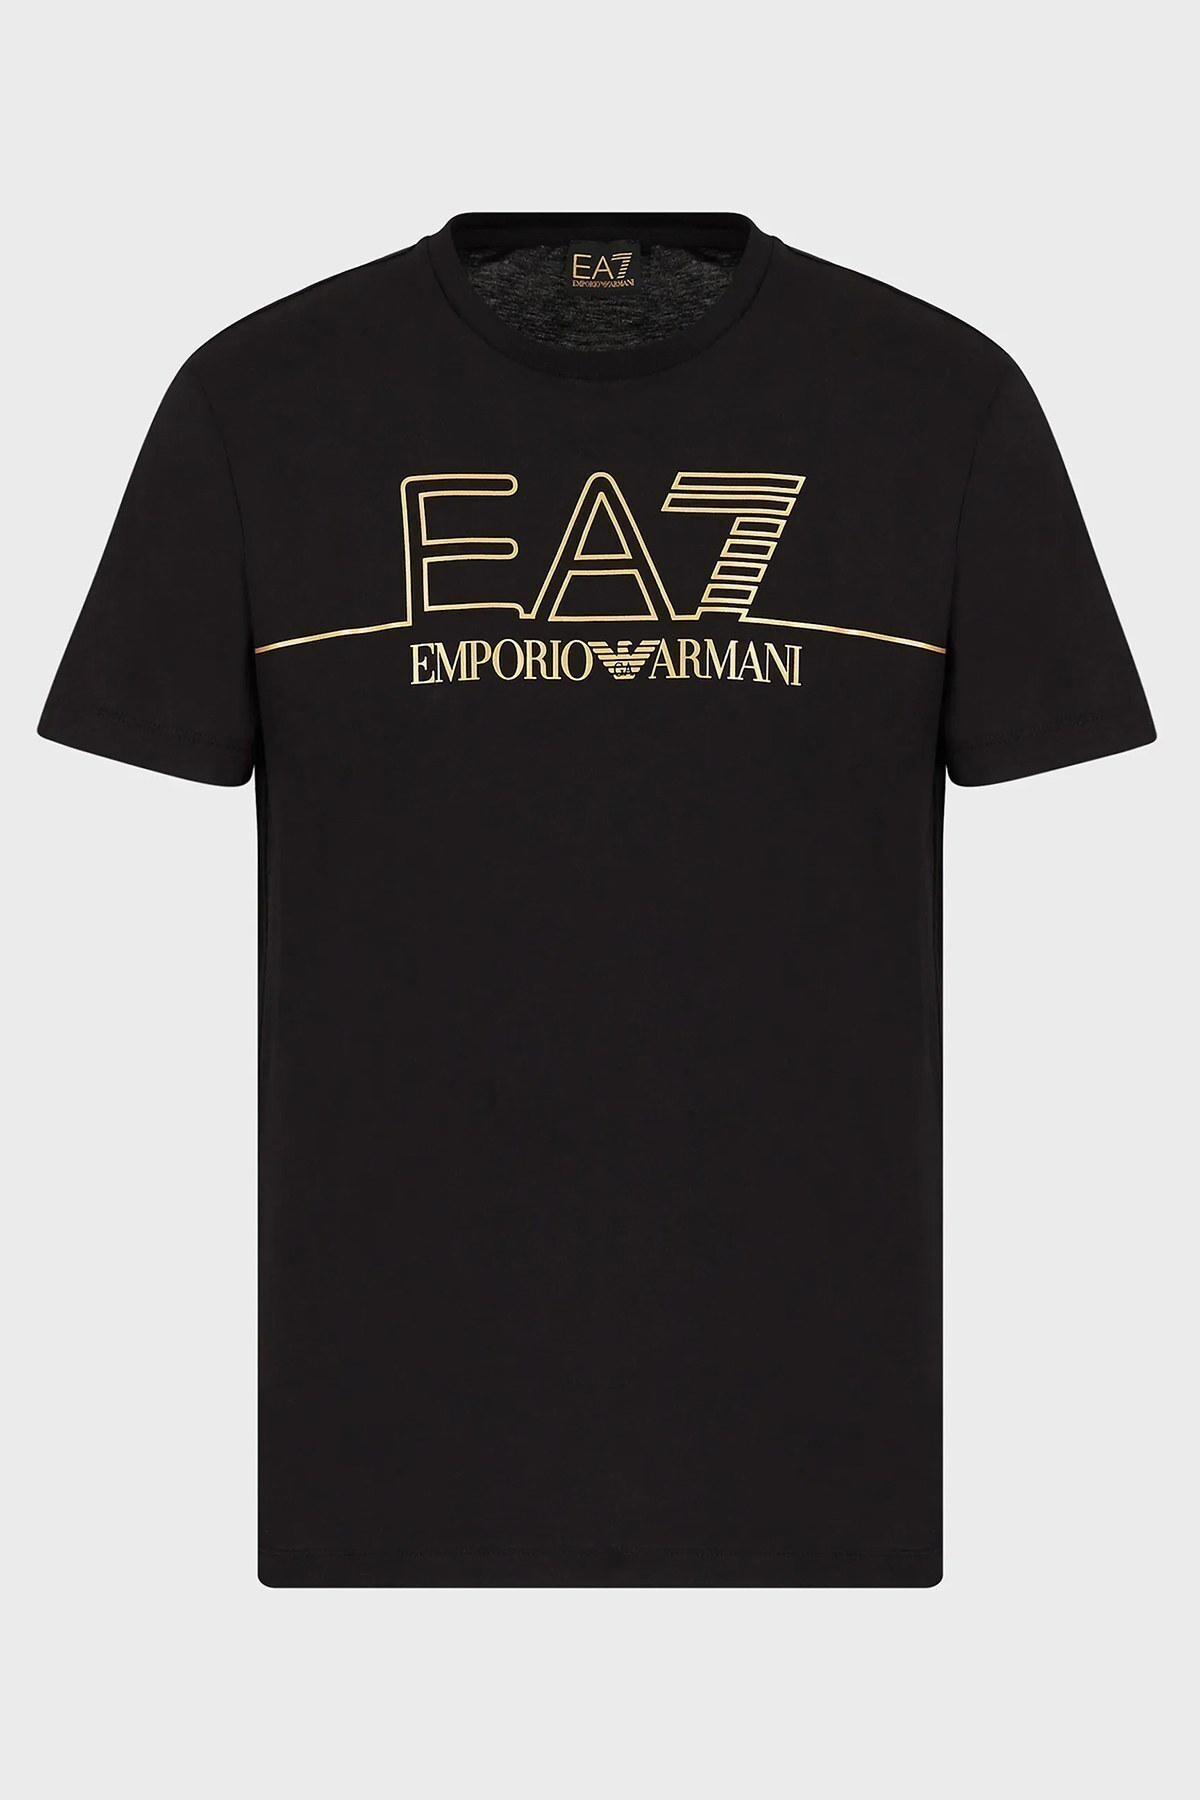 EA7 Erkek T Shirt 6KPT19 PJM9Z 1200 SİYAH